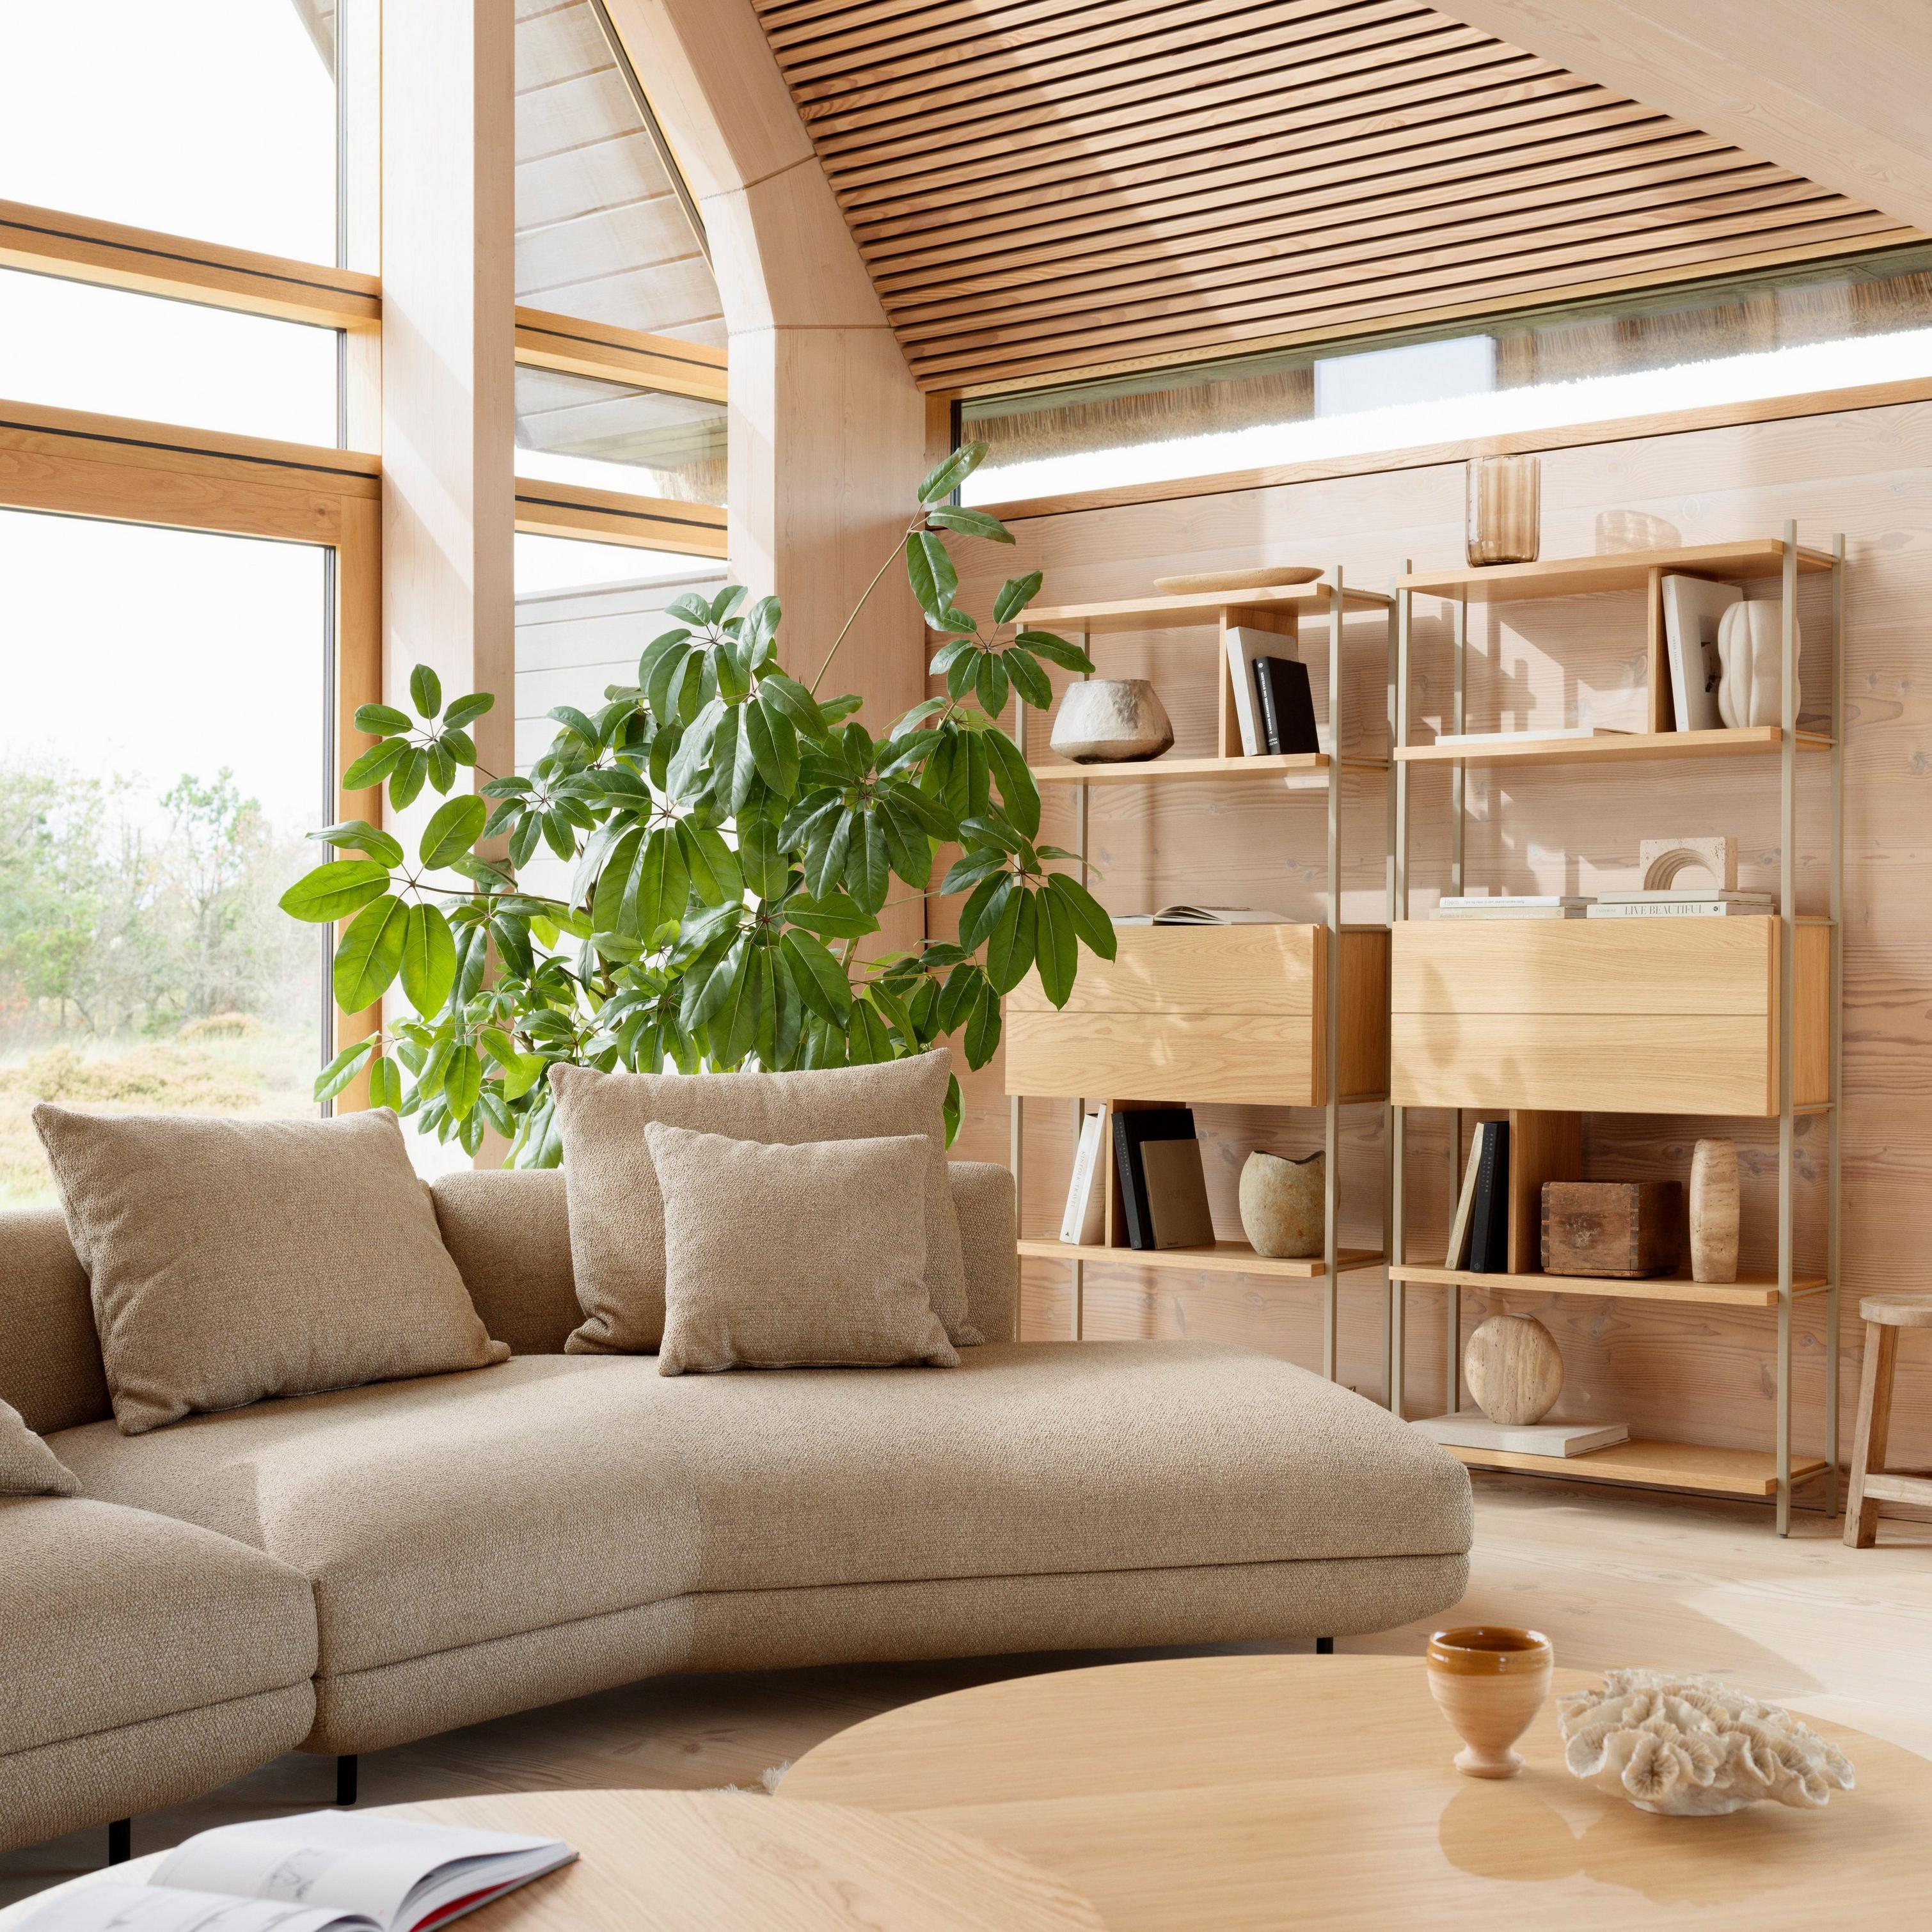 Moderner, von der Natur inspirierter Wohnbereich mit Salamanca Sofa, bezogen mit braunem Lazio Stoff.